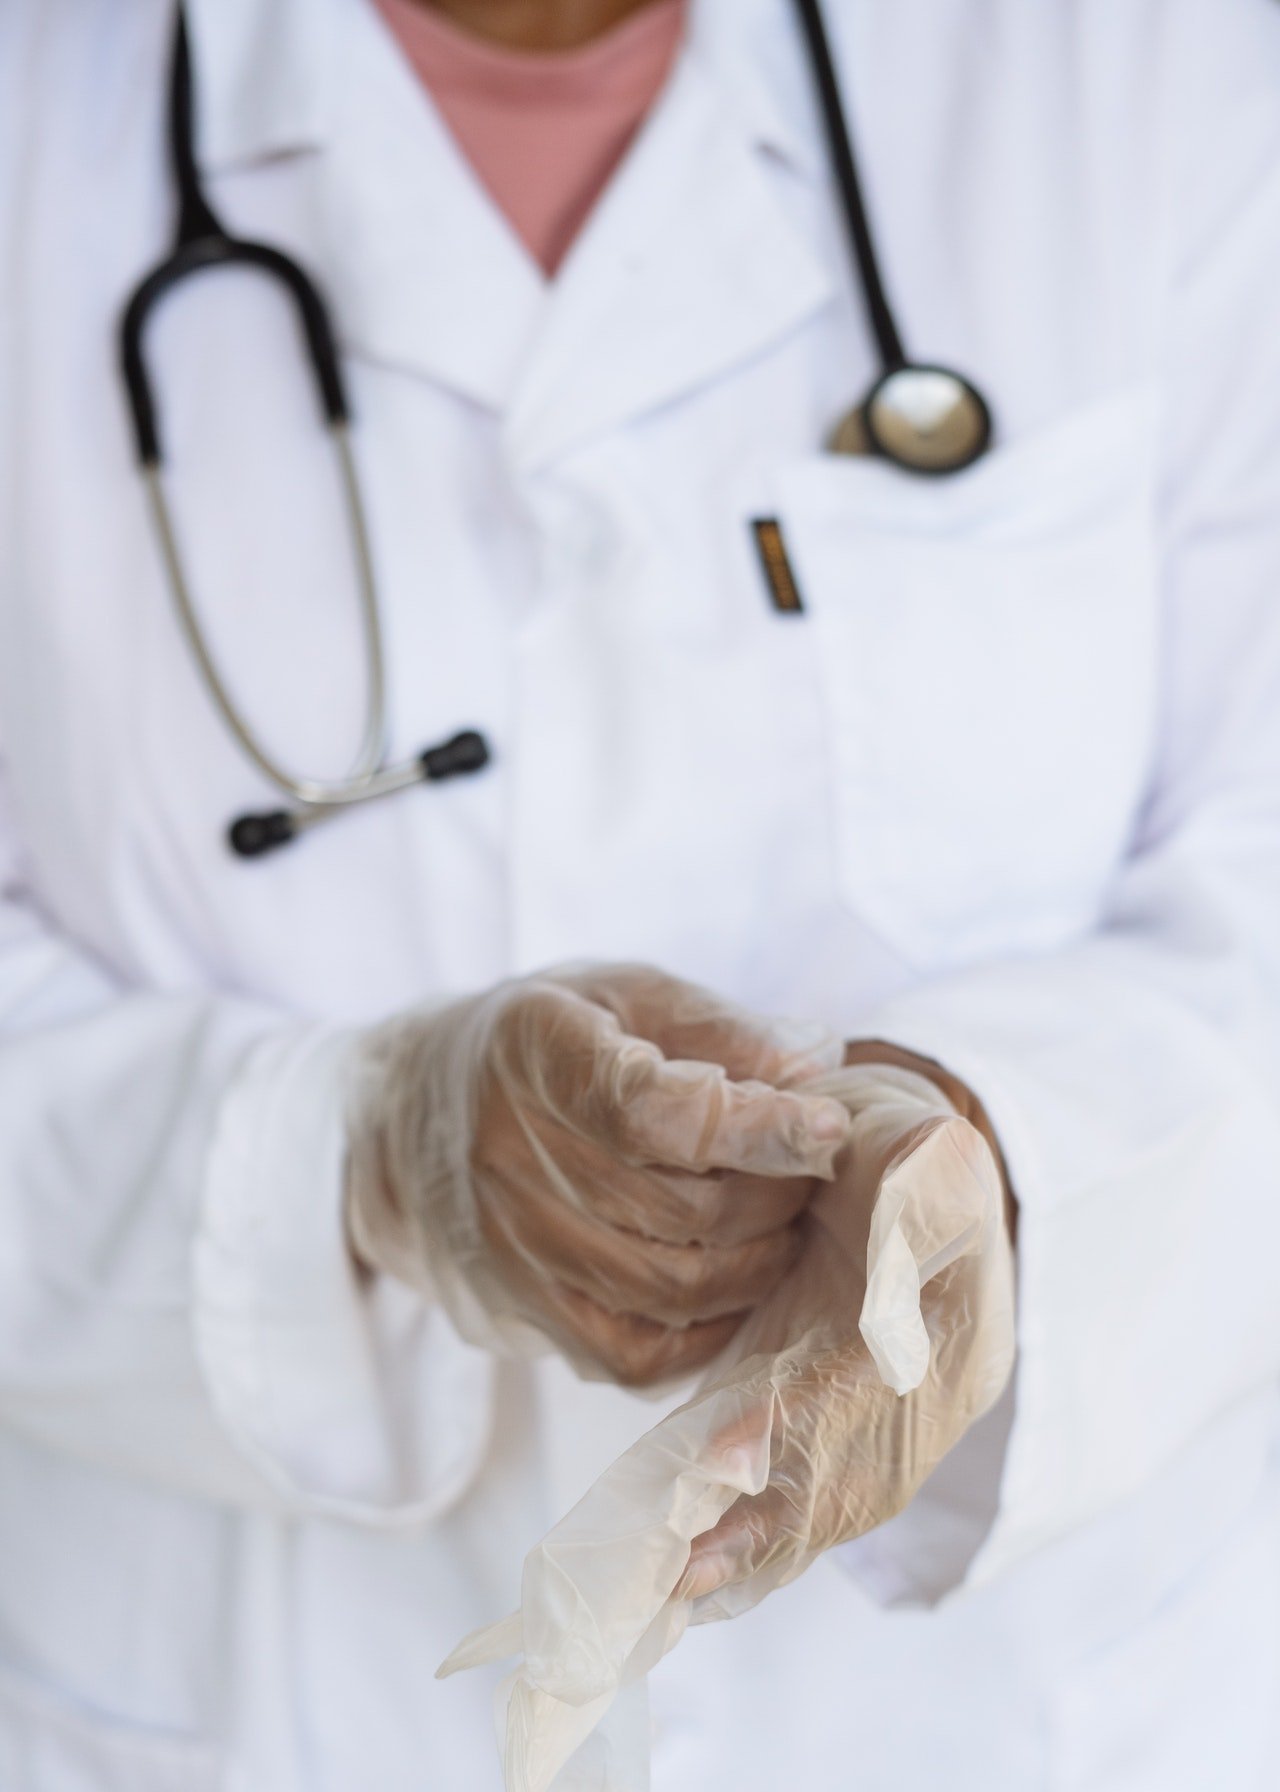 Un médico con bata blanca se quita los guantes. | Foto: Pexels